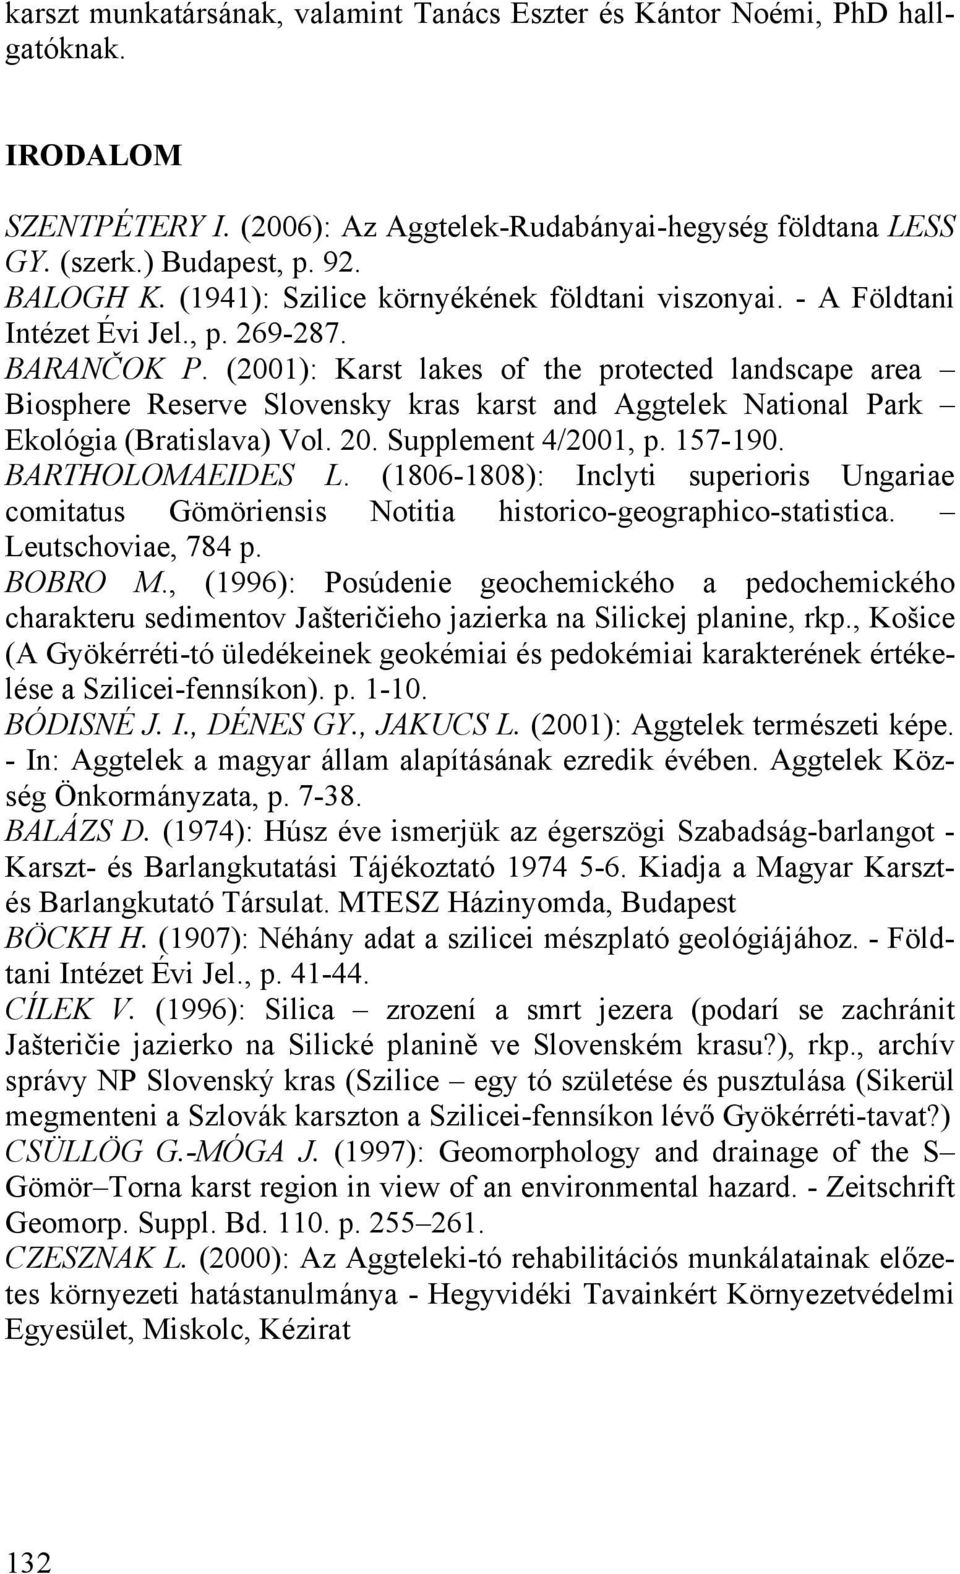 (2001): Karst lakes of the protected landscape area Biosphere Reserve Slovensky kras karst and Aggtelek National Park Ekológia (Bratislava) Vol. 20. Supplement 4/2001, p. 157-190. BARTHOLOMAEIDES L.